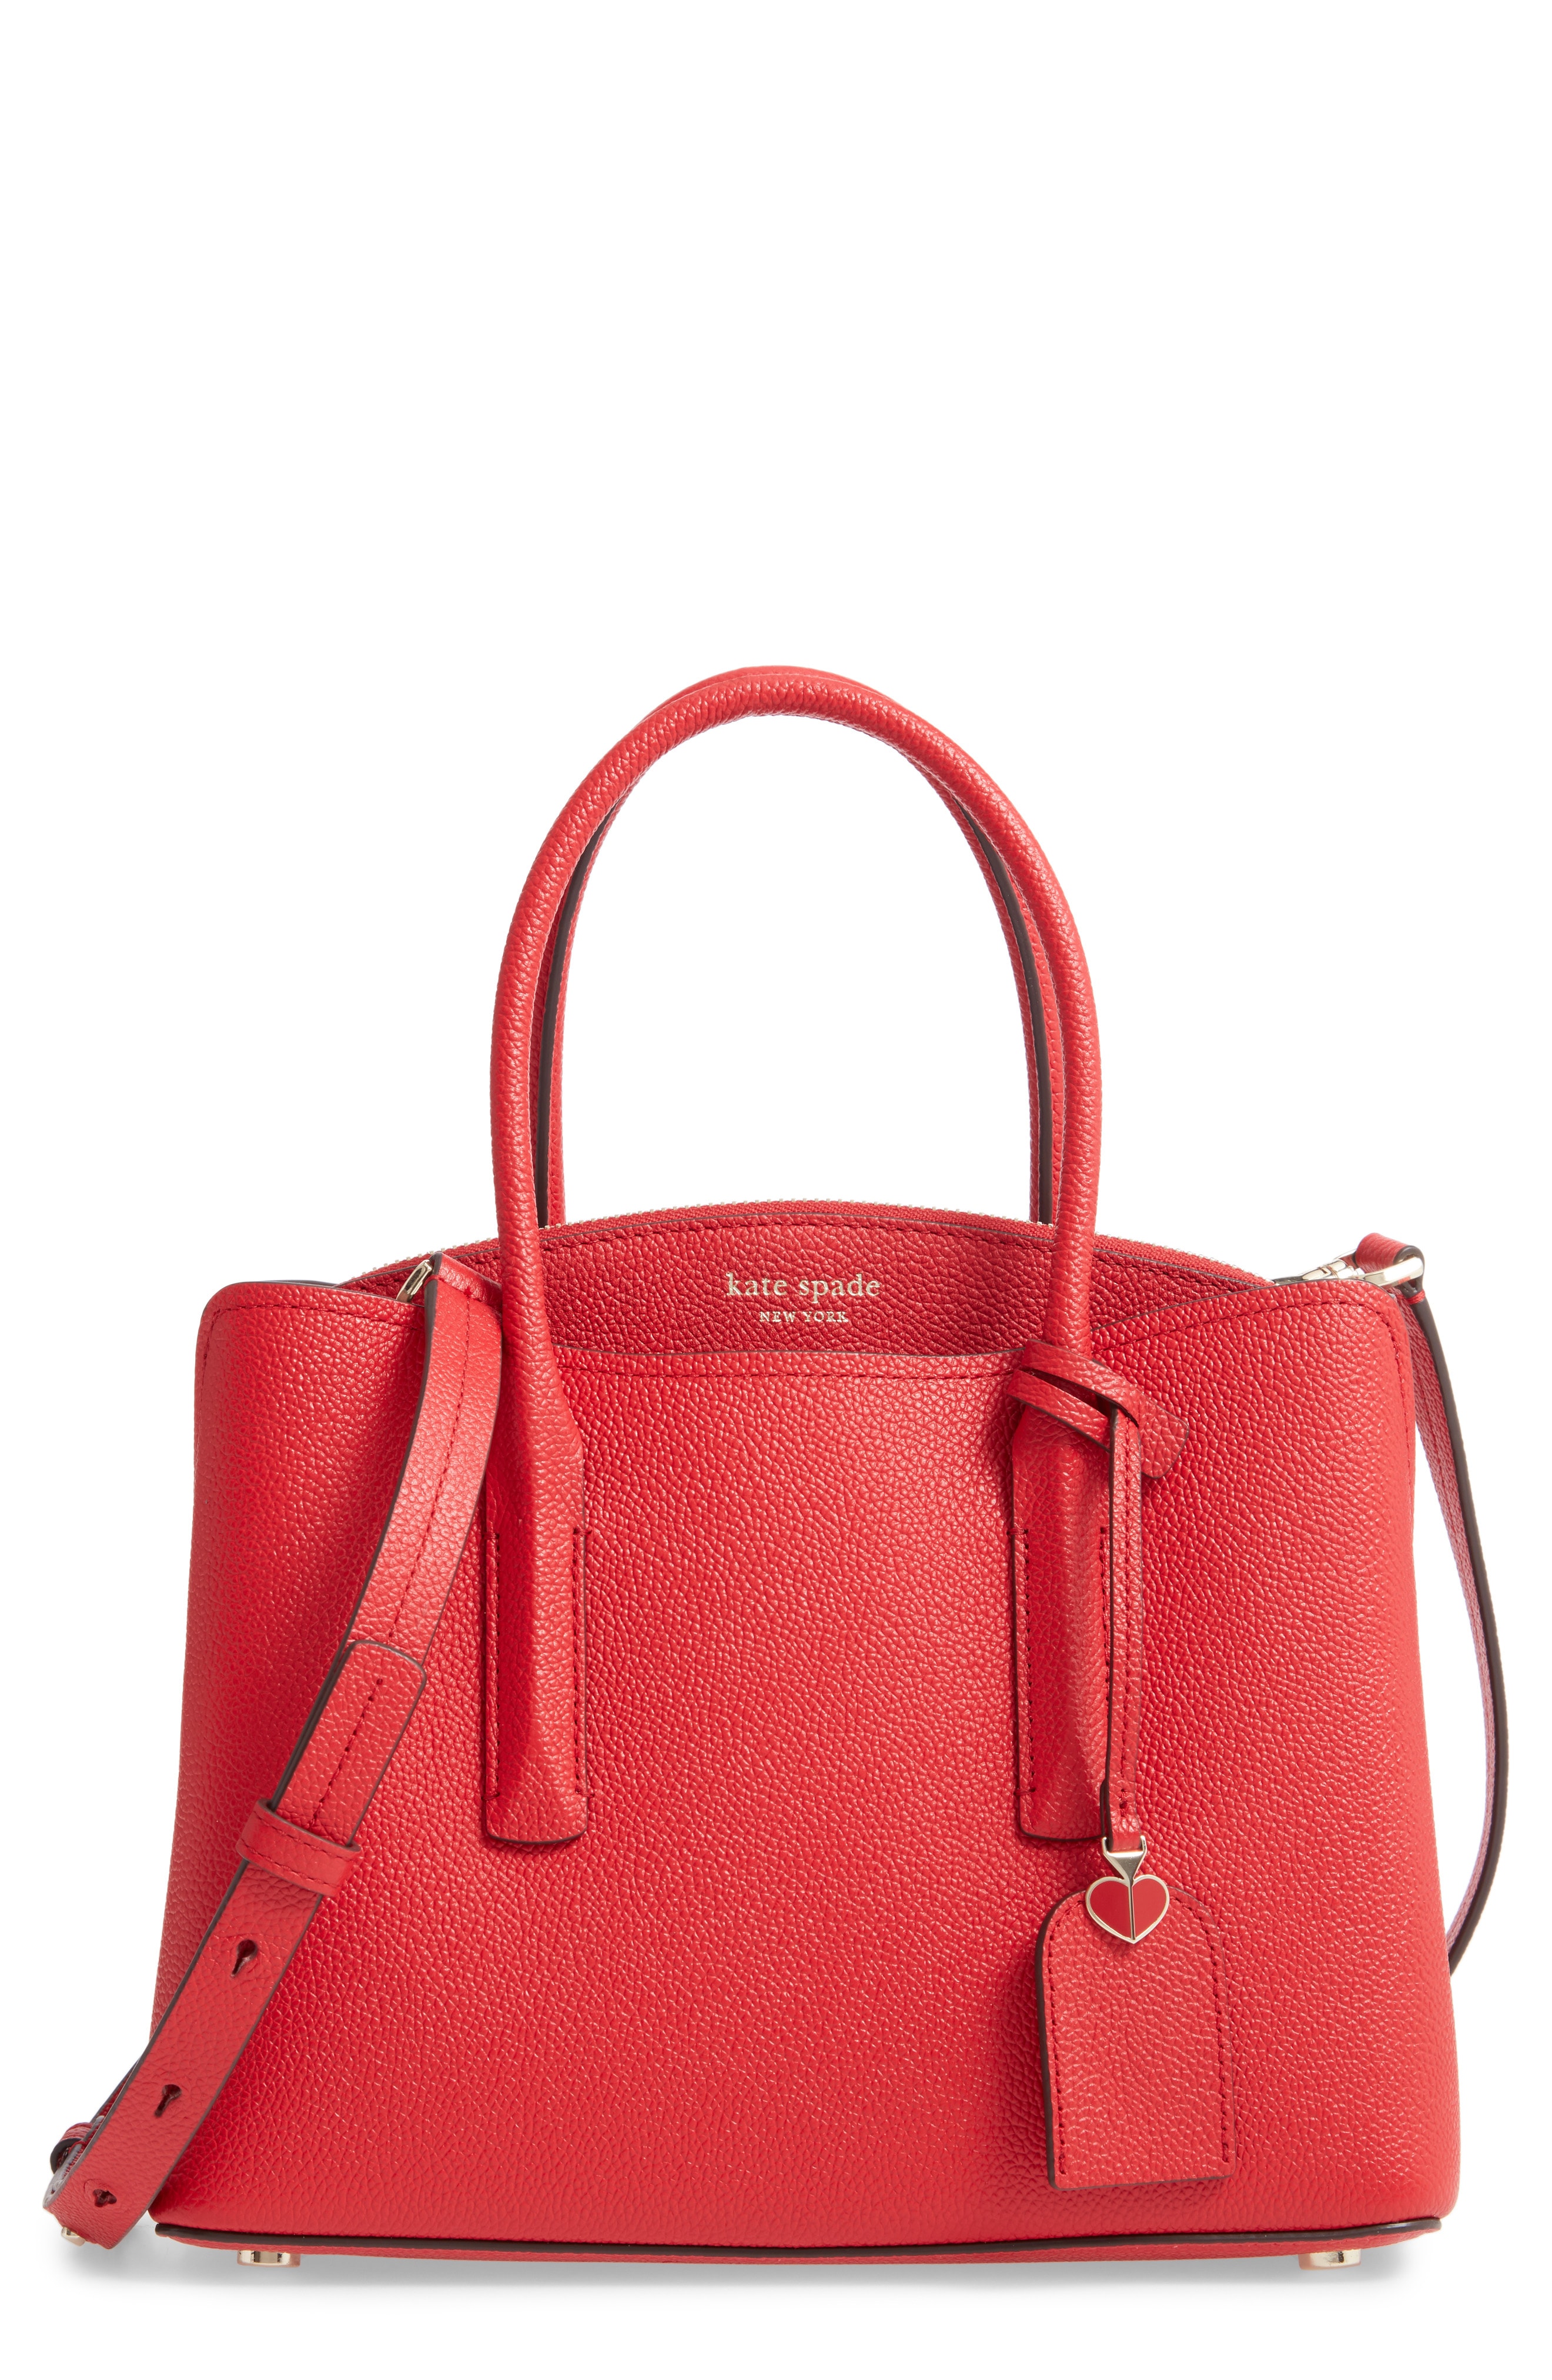 Red Handbags & Purses | Nordstrom